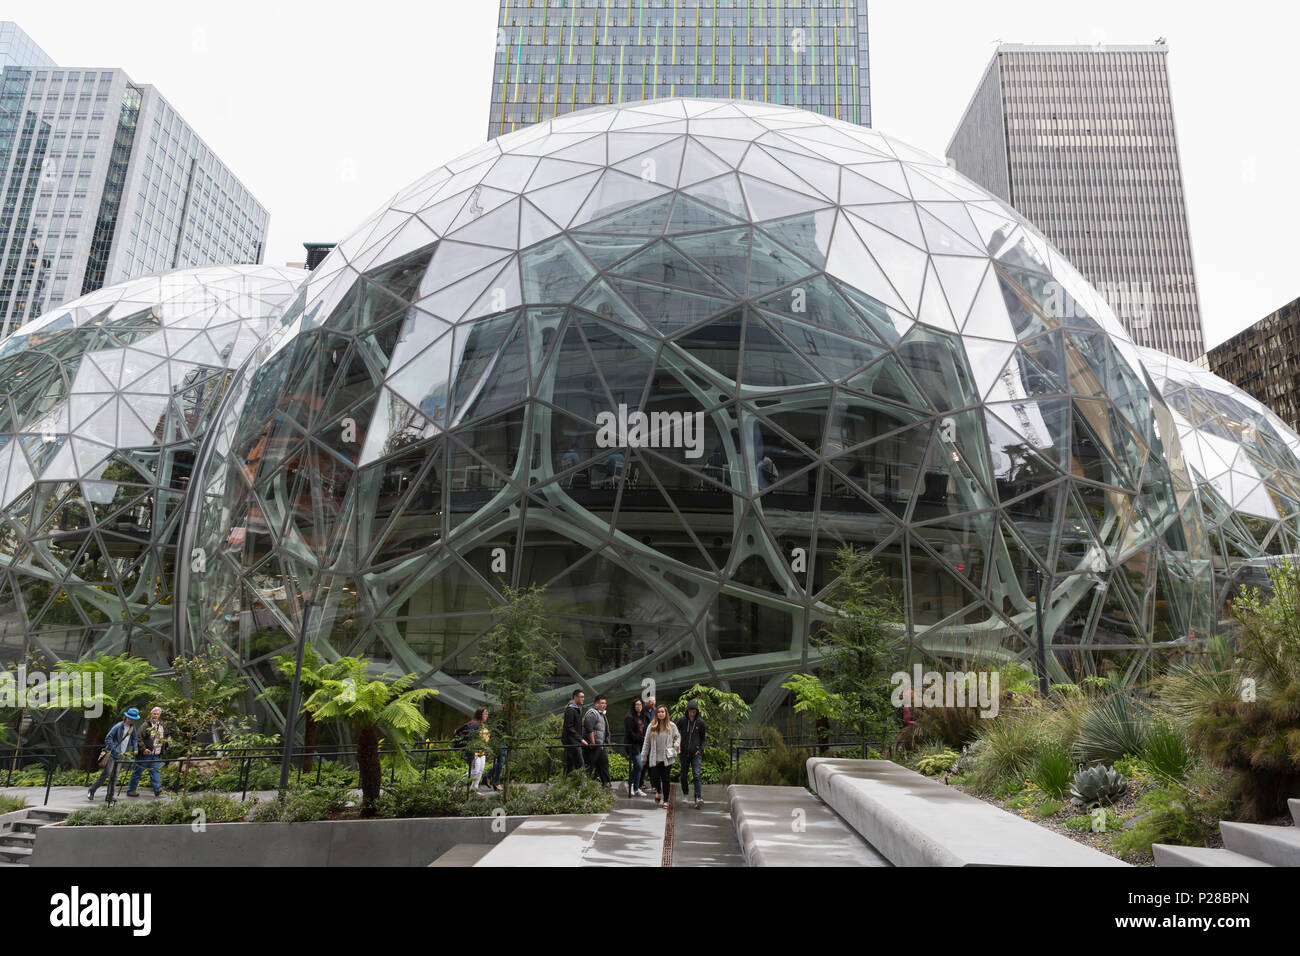 Seattle, Washington: Amazon sfere in Amazzonia HQ. Le strutture geodetiche house spazio office, vendita al dettaglio e un giardino botanico. Foto Stock